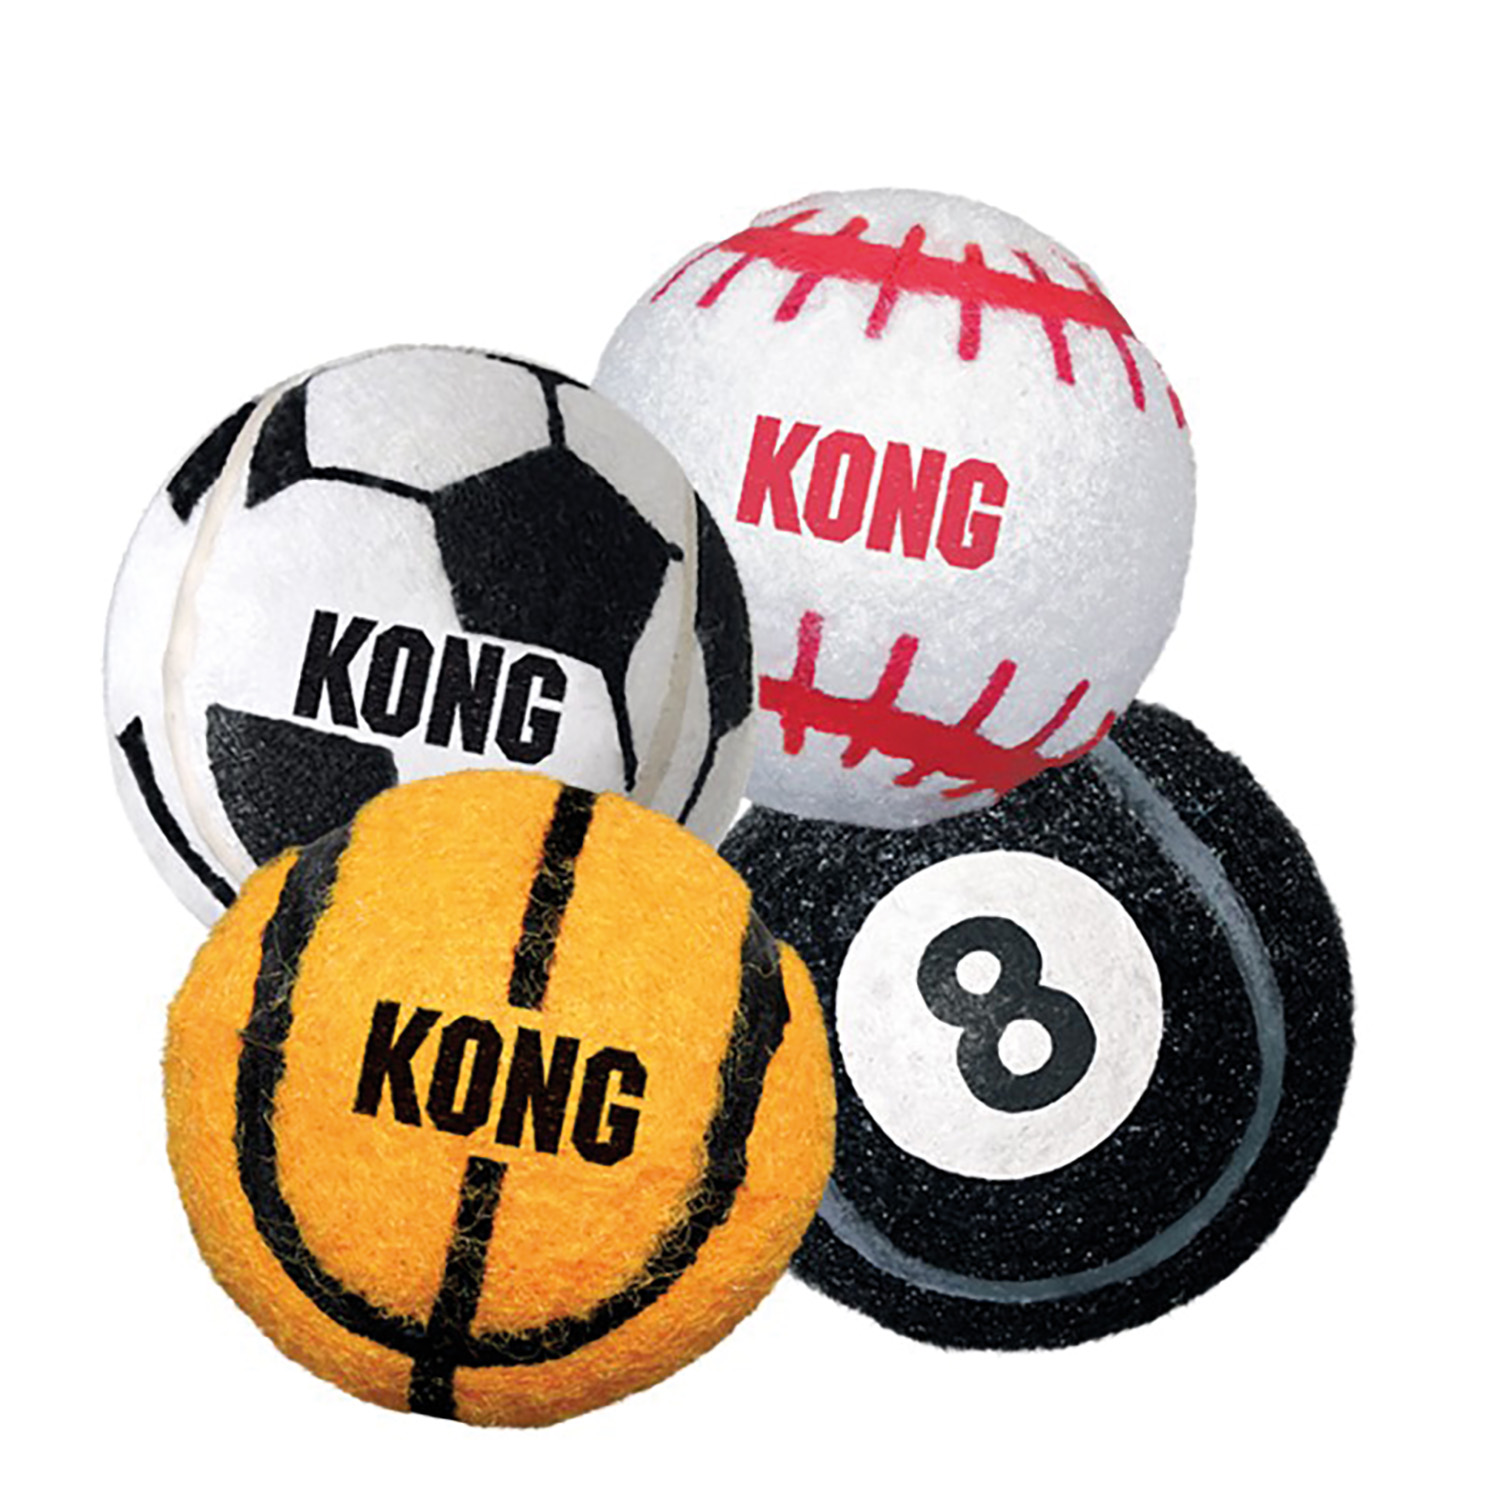 KONG SPORT BALL SMALL X 3 PACK  ASSORTED